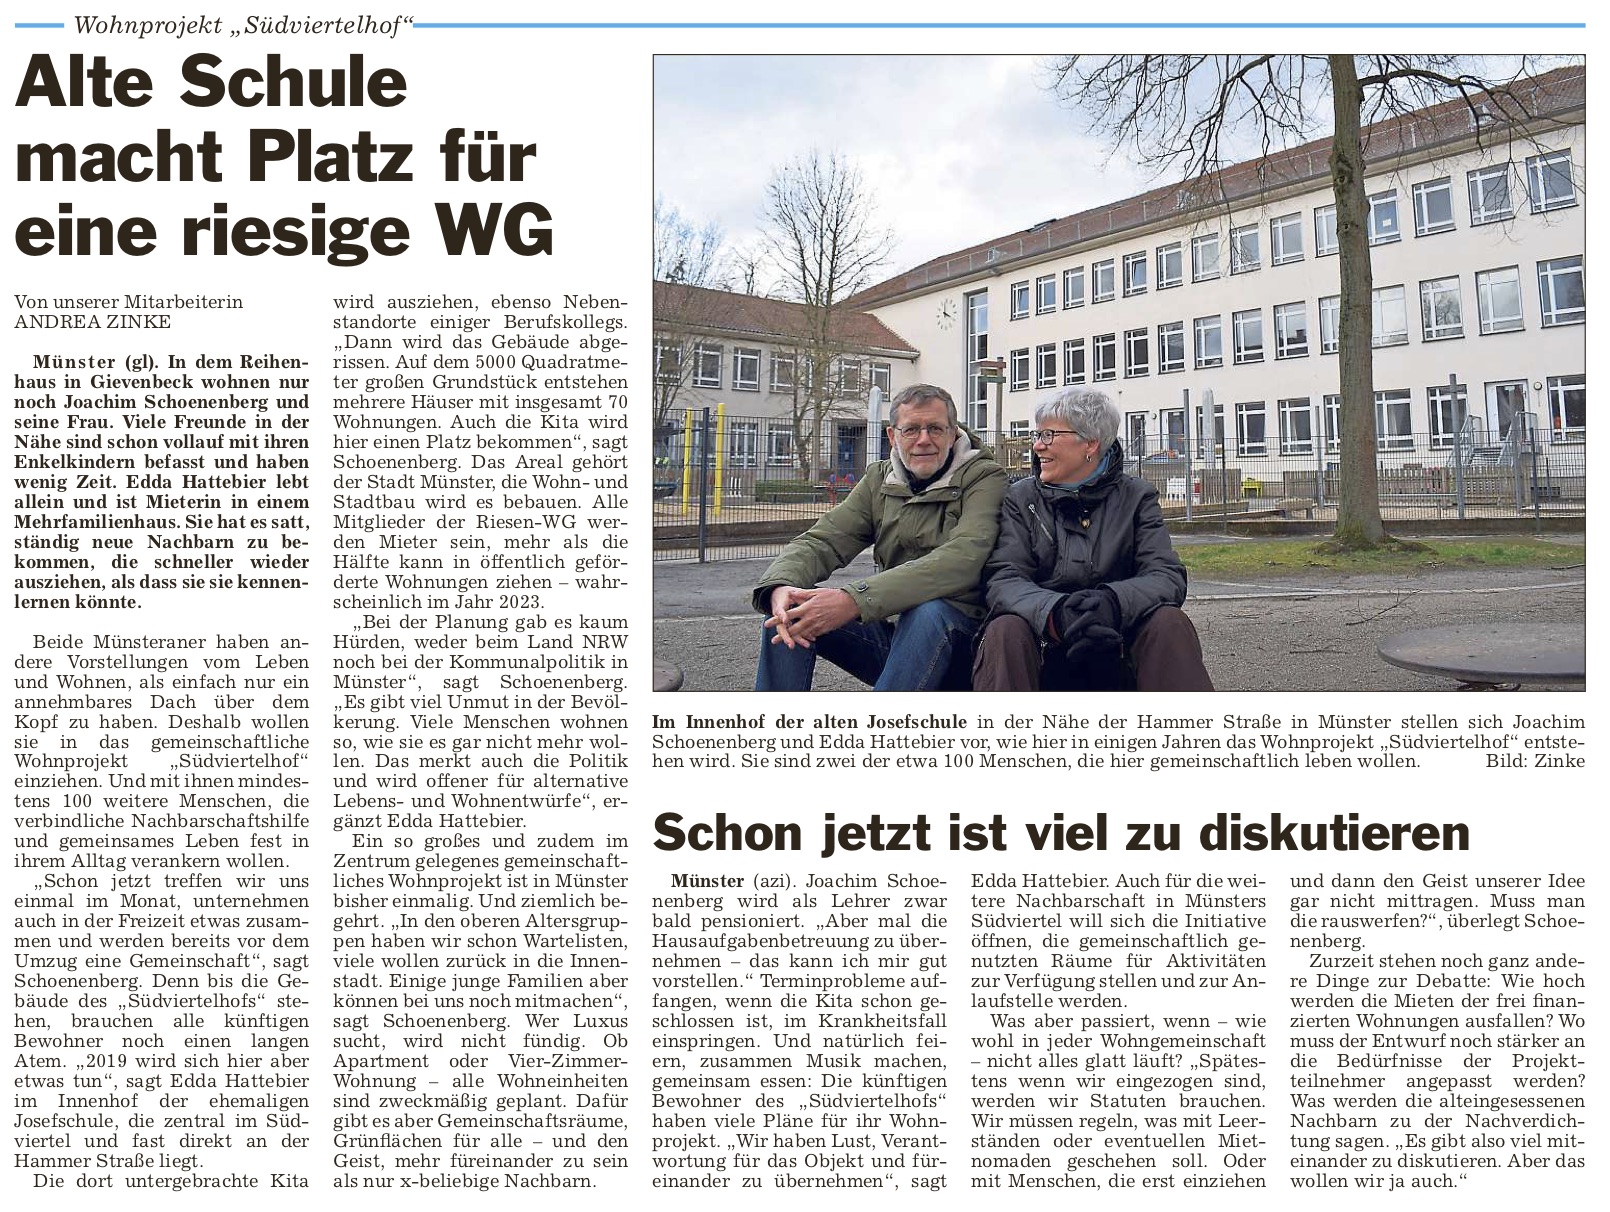 Artikel aus der Zeitschrift "Die Glocke". Überschrift "Alte Schule macht Platz für eine riesige WG"